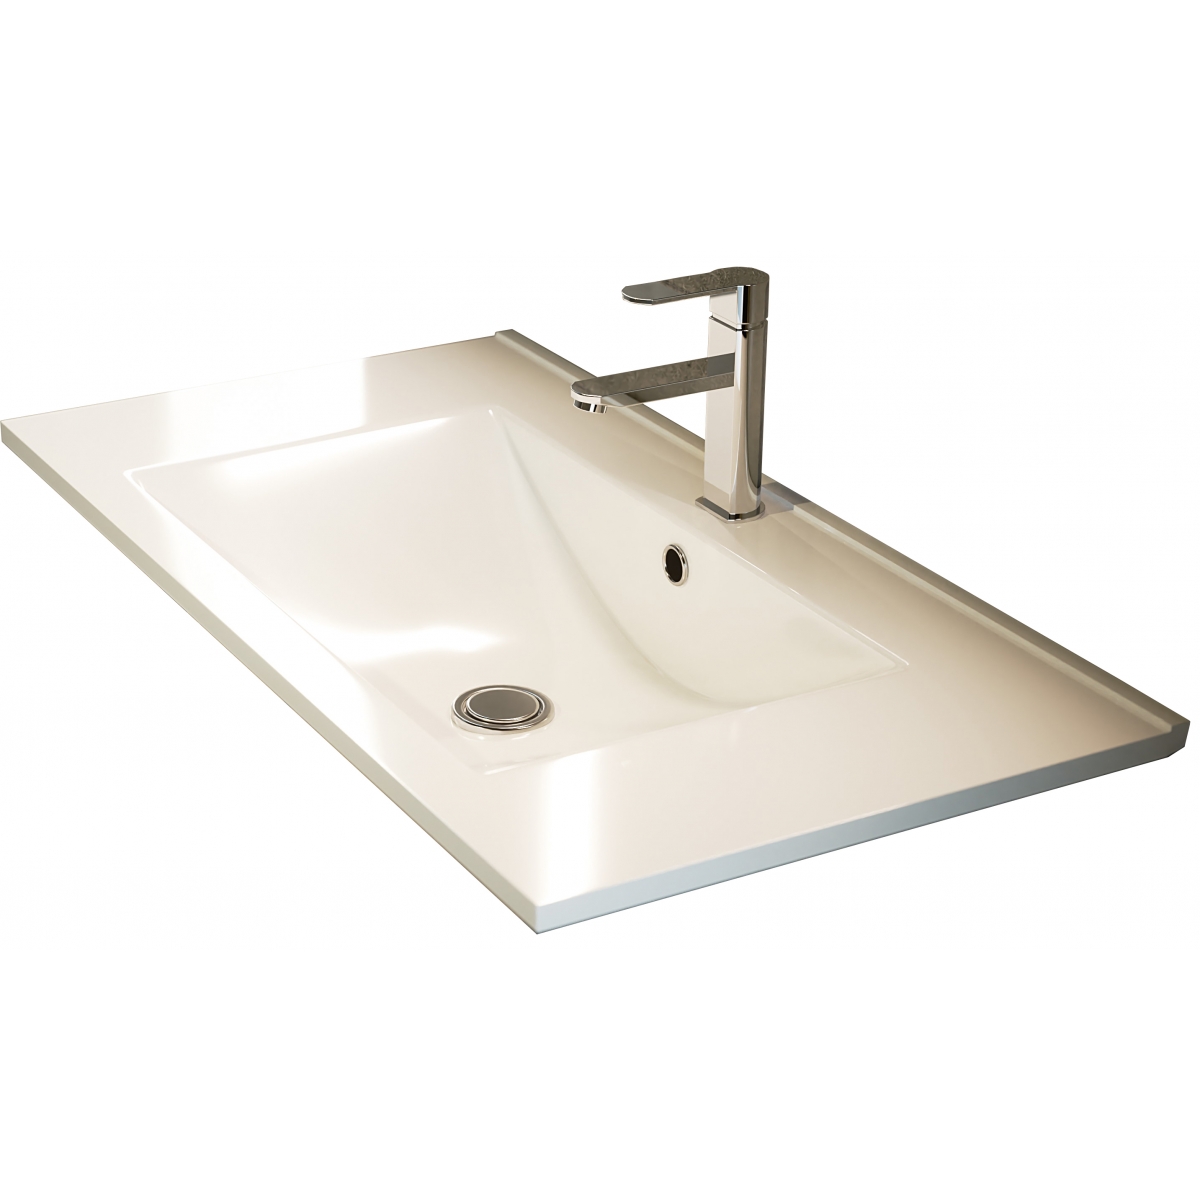 Fotos ambiente de Mueble de baño suspendido Poole de 60 cm de ancho color Ebony con lavabo integrado [54996]